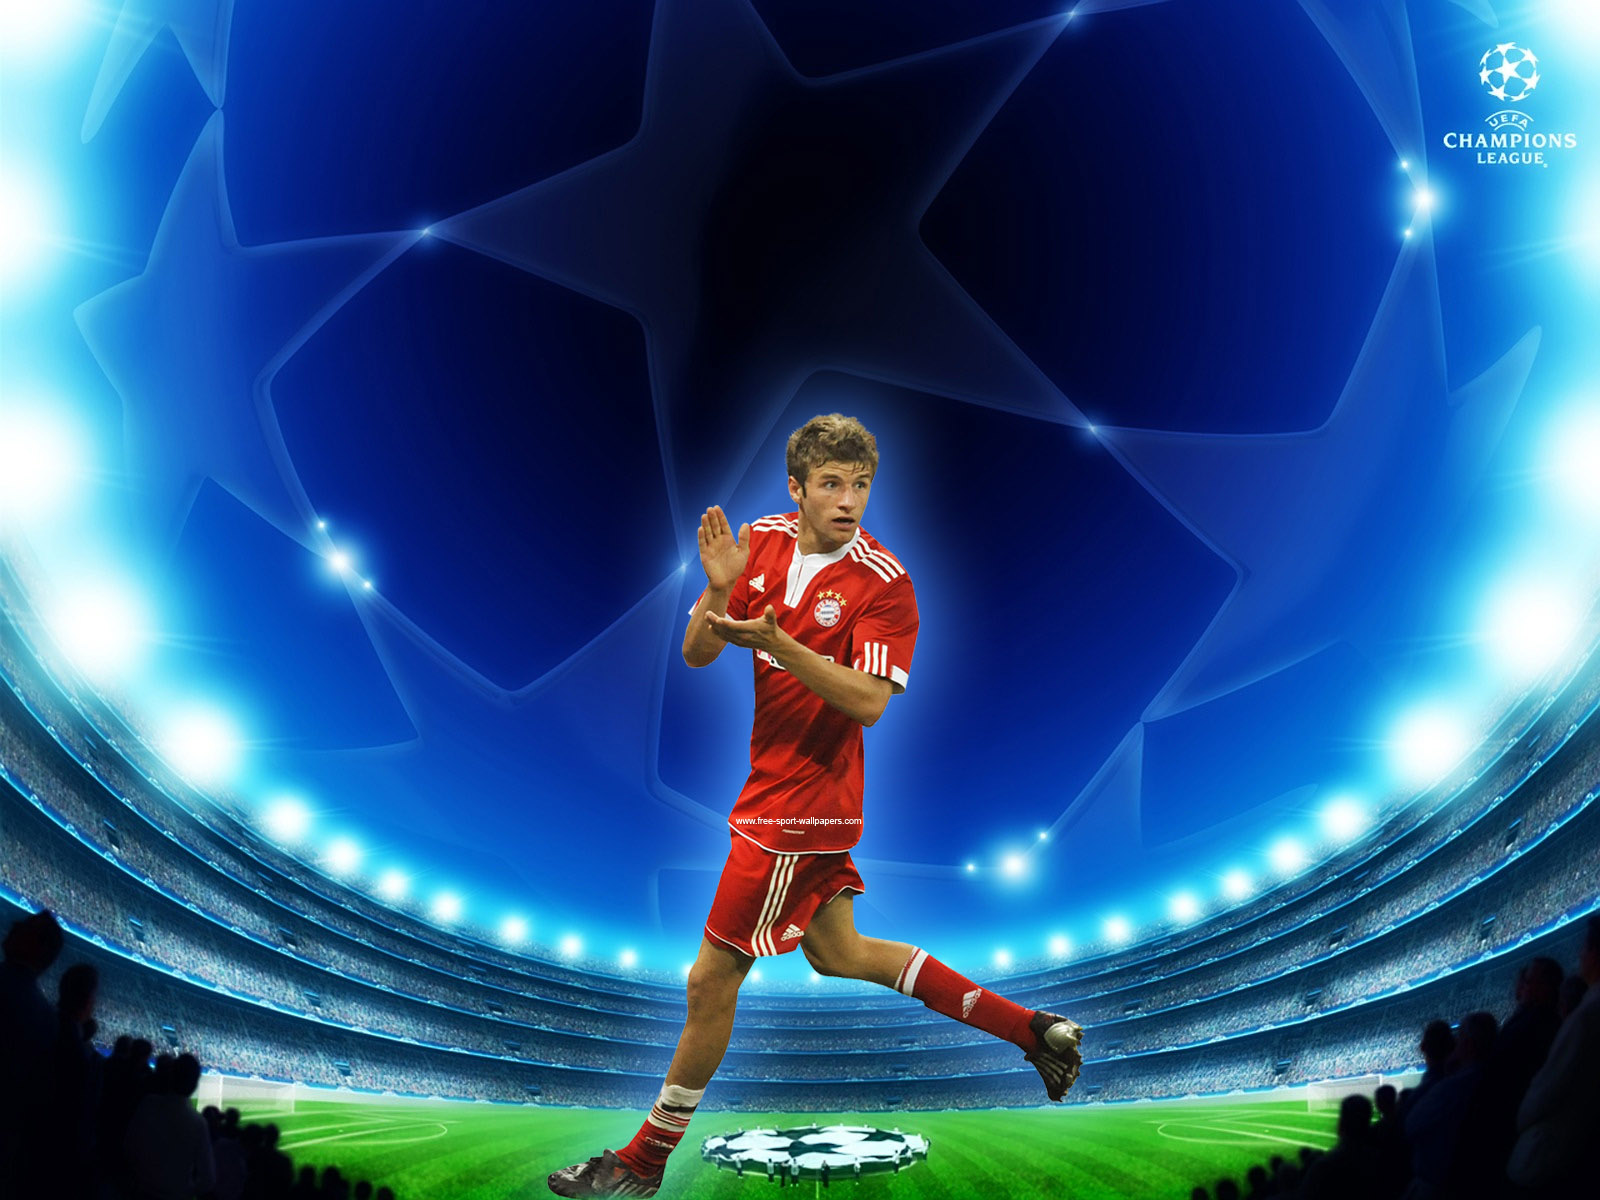 All Football Stars Thomas Mueller HD Wallpaper